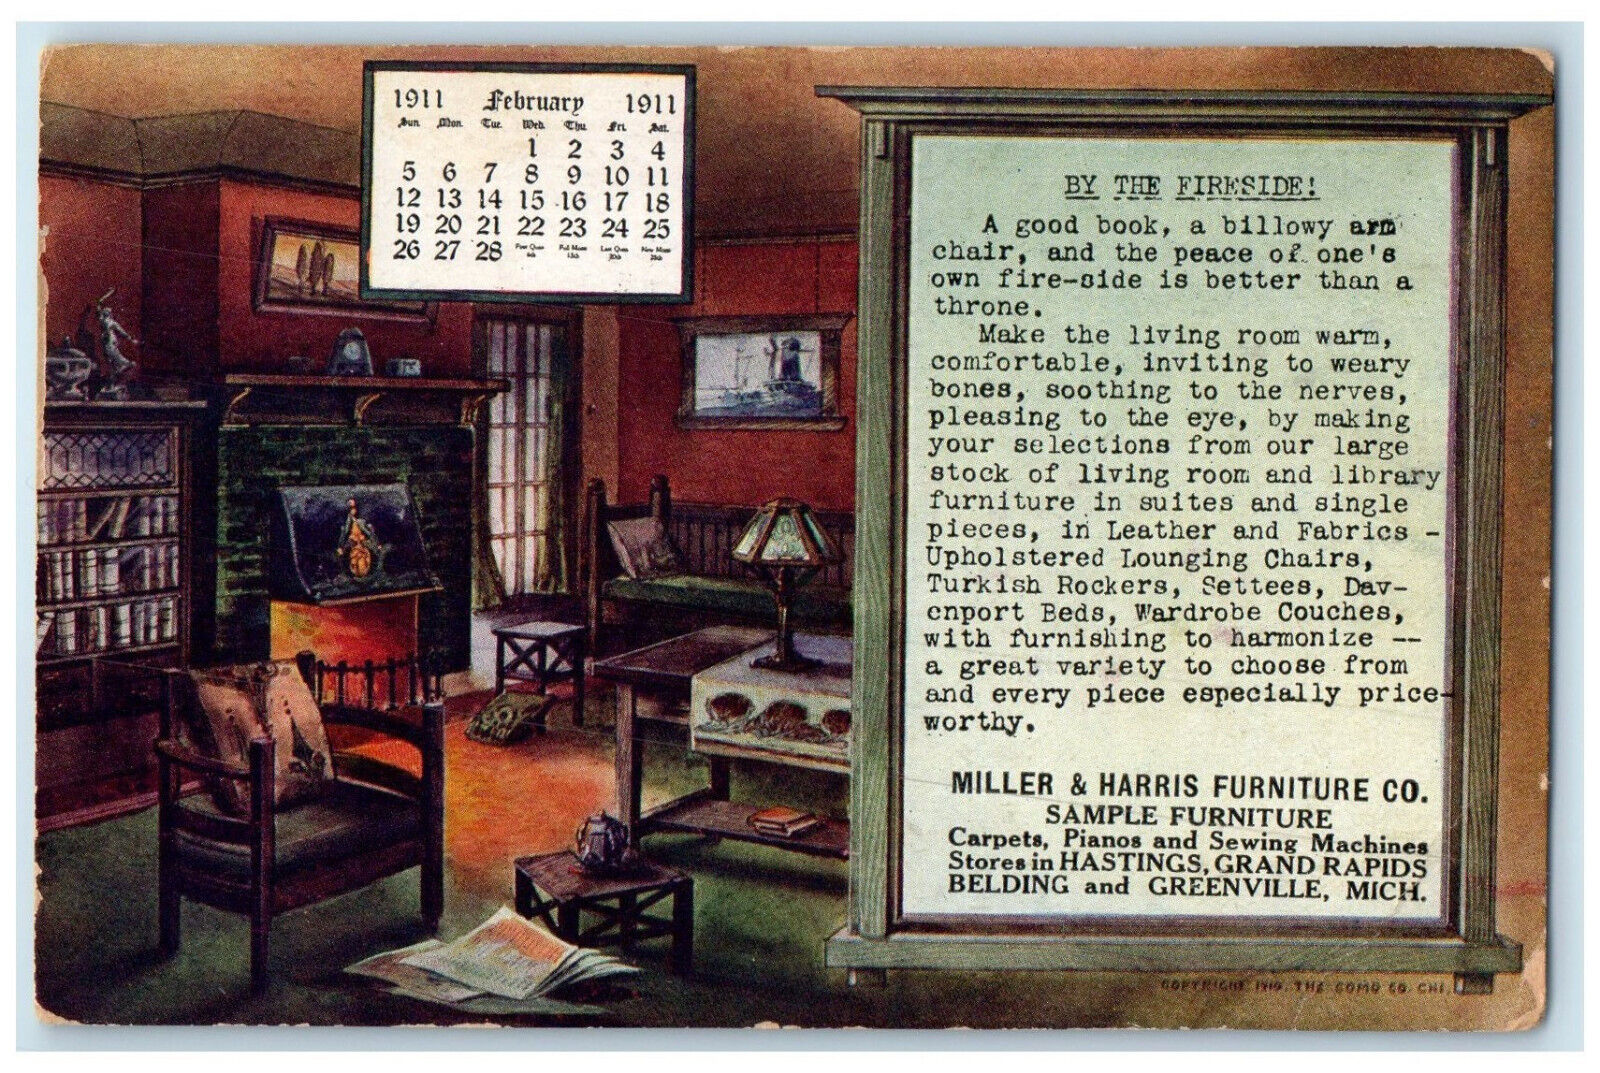 c1905 Miller & Harris Furniture Co. Greenville Michigan MI Calendar Postcard